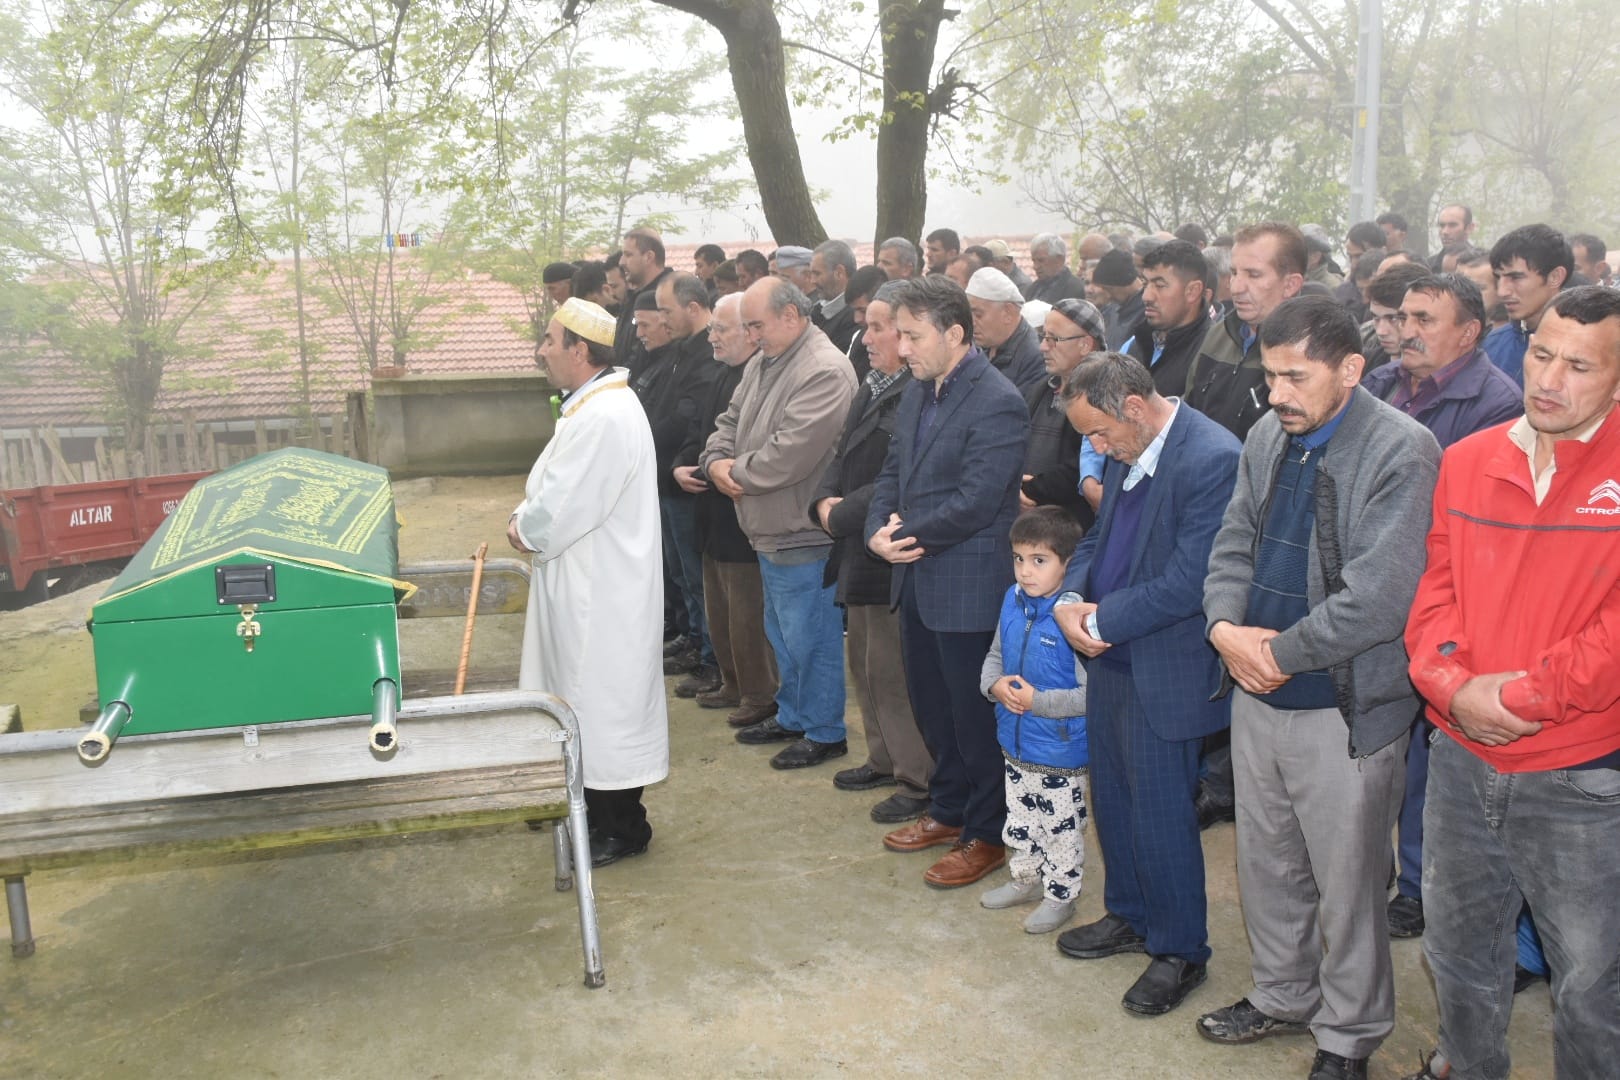 Belediye Başkanımız Hüseyin Kıyma ilçemiz Mutaflı mahallesi halkından vefat eden Hüseyin Kıdıl’ın cenaze namazına katıldı, ailesine baş sağlığında bulundu.